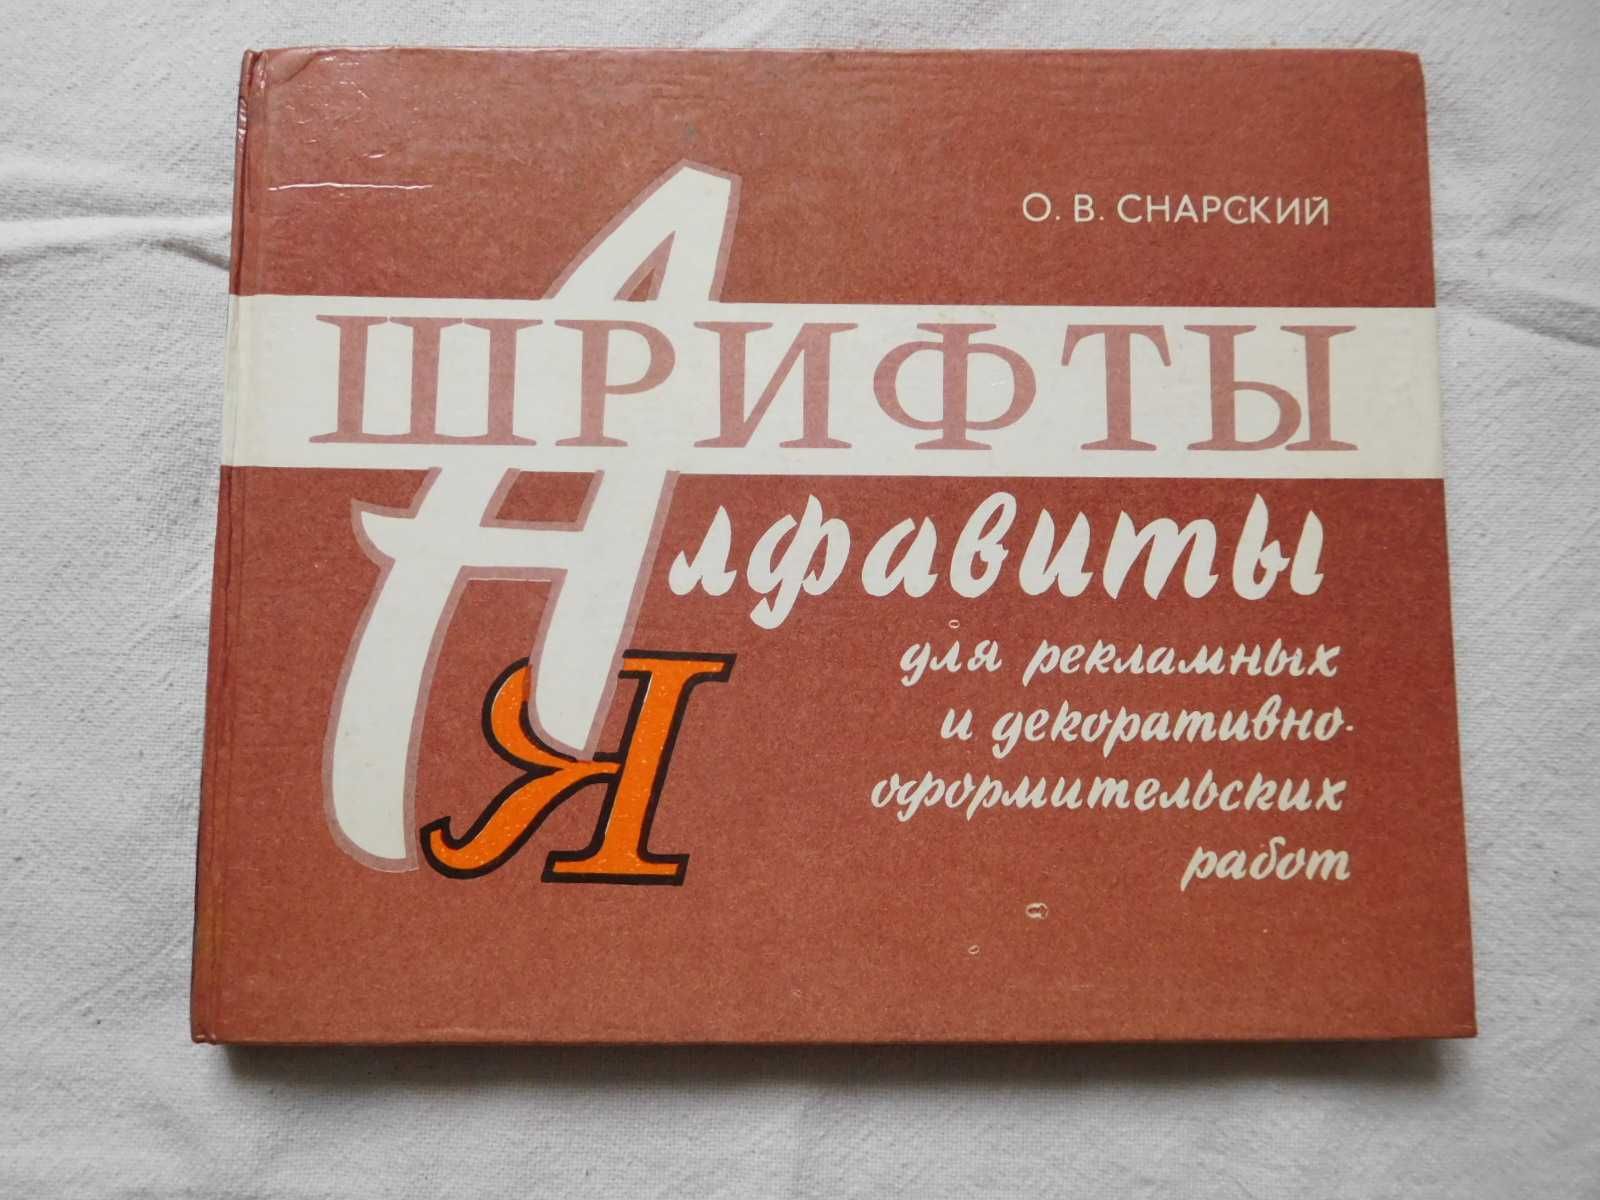 Снарский Шрифты и алфавиты для рекламных и декоративных работ 1984